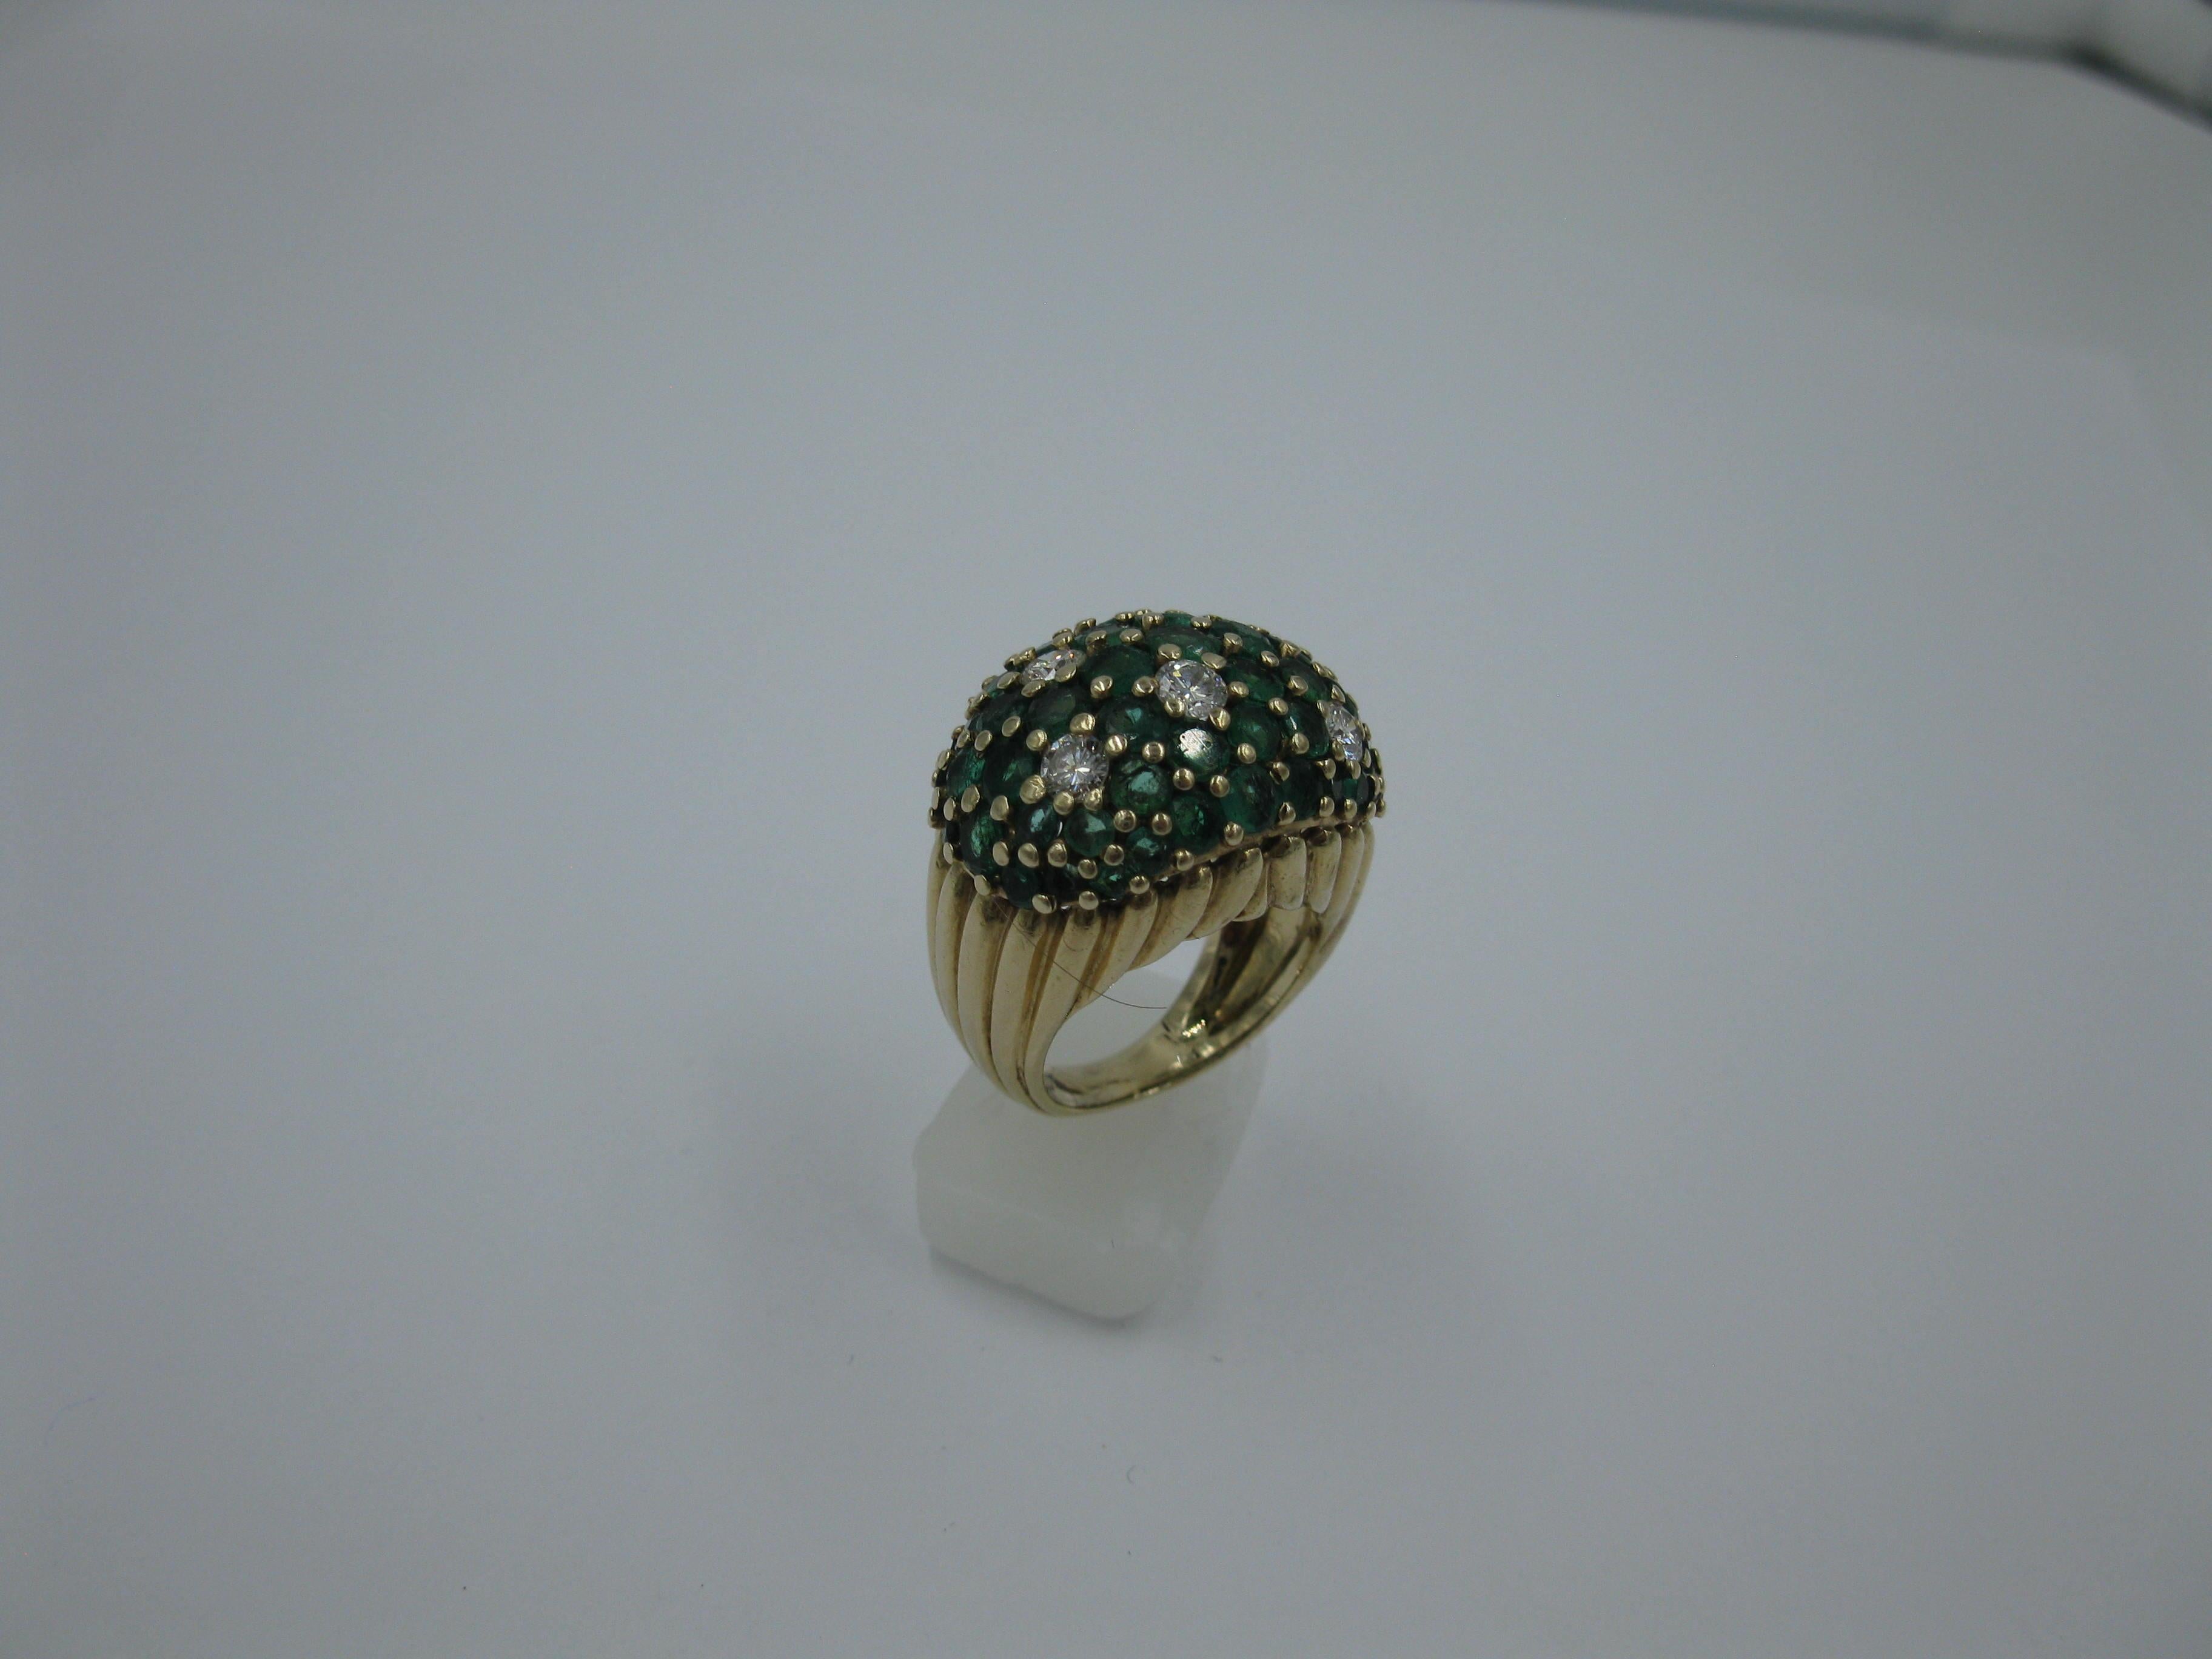 Dies ist ein wunderschöner Smaragd-Diamant-Ring aus der Mitte des Jahrhunderts, der aus dem Nachlass einer der frühen und legendären Familien von Los Angeles stammt.  Der Ring besteht aus 58 natürlichen Smaragden von feiner grüner Farbe, die mit 5